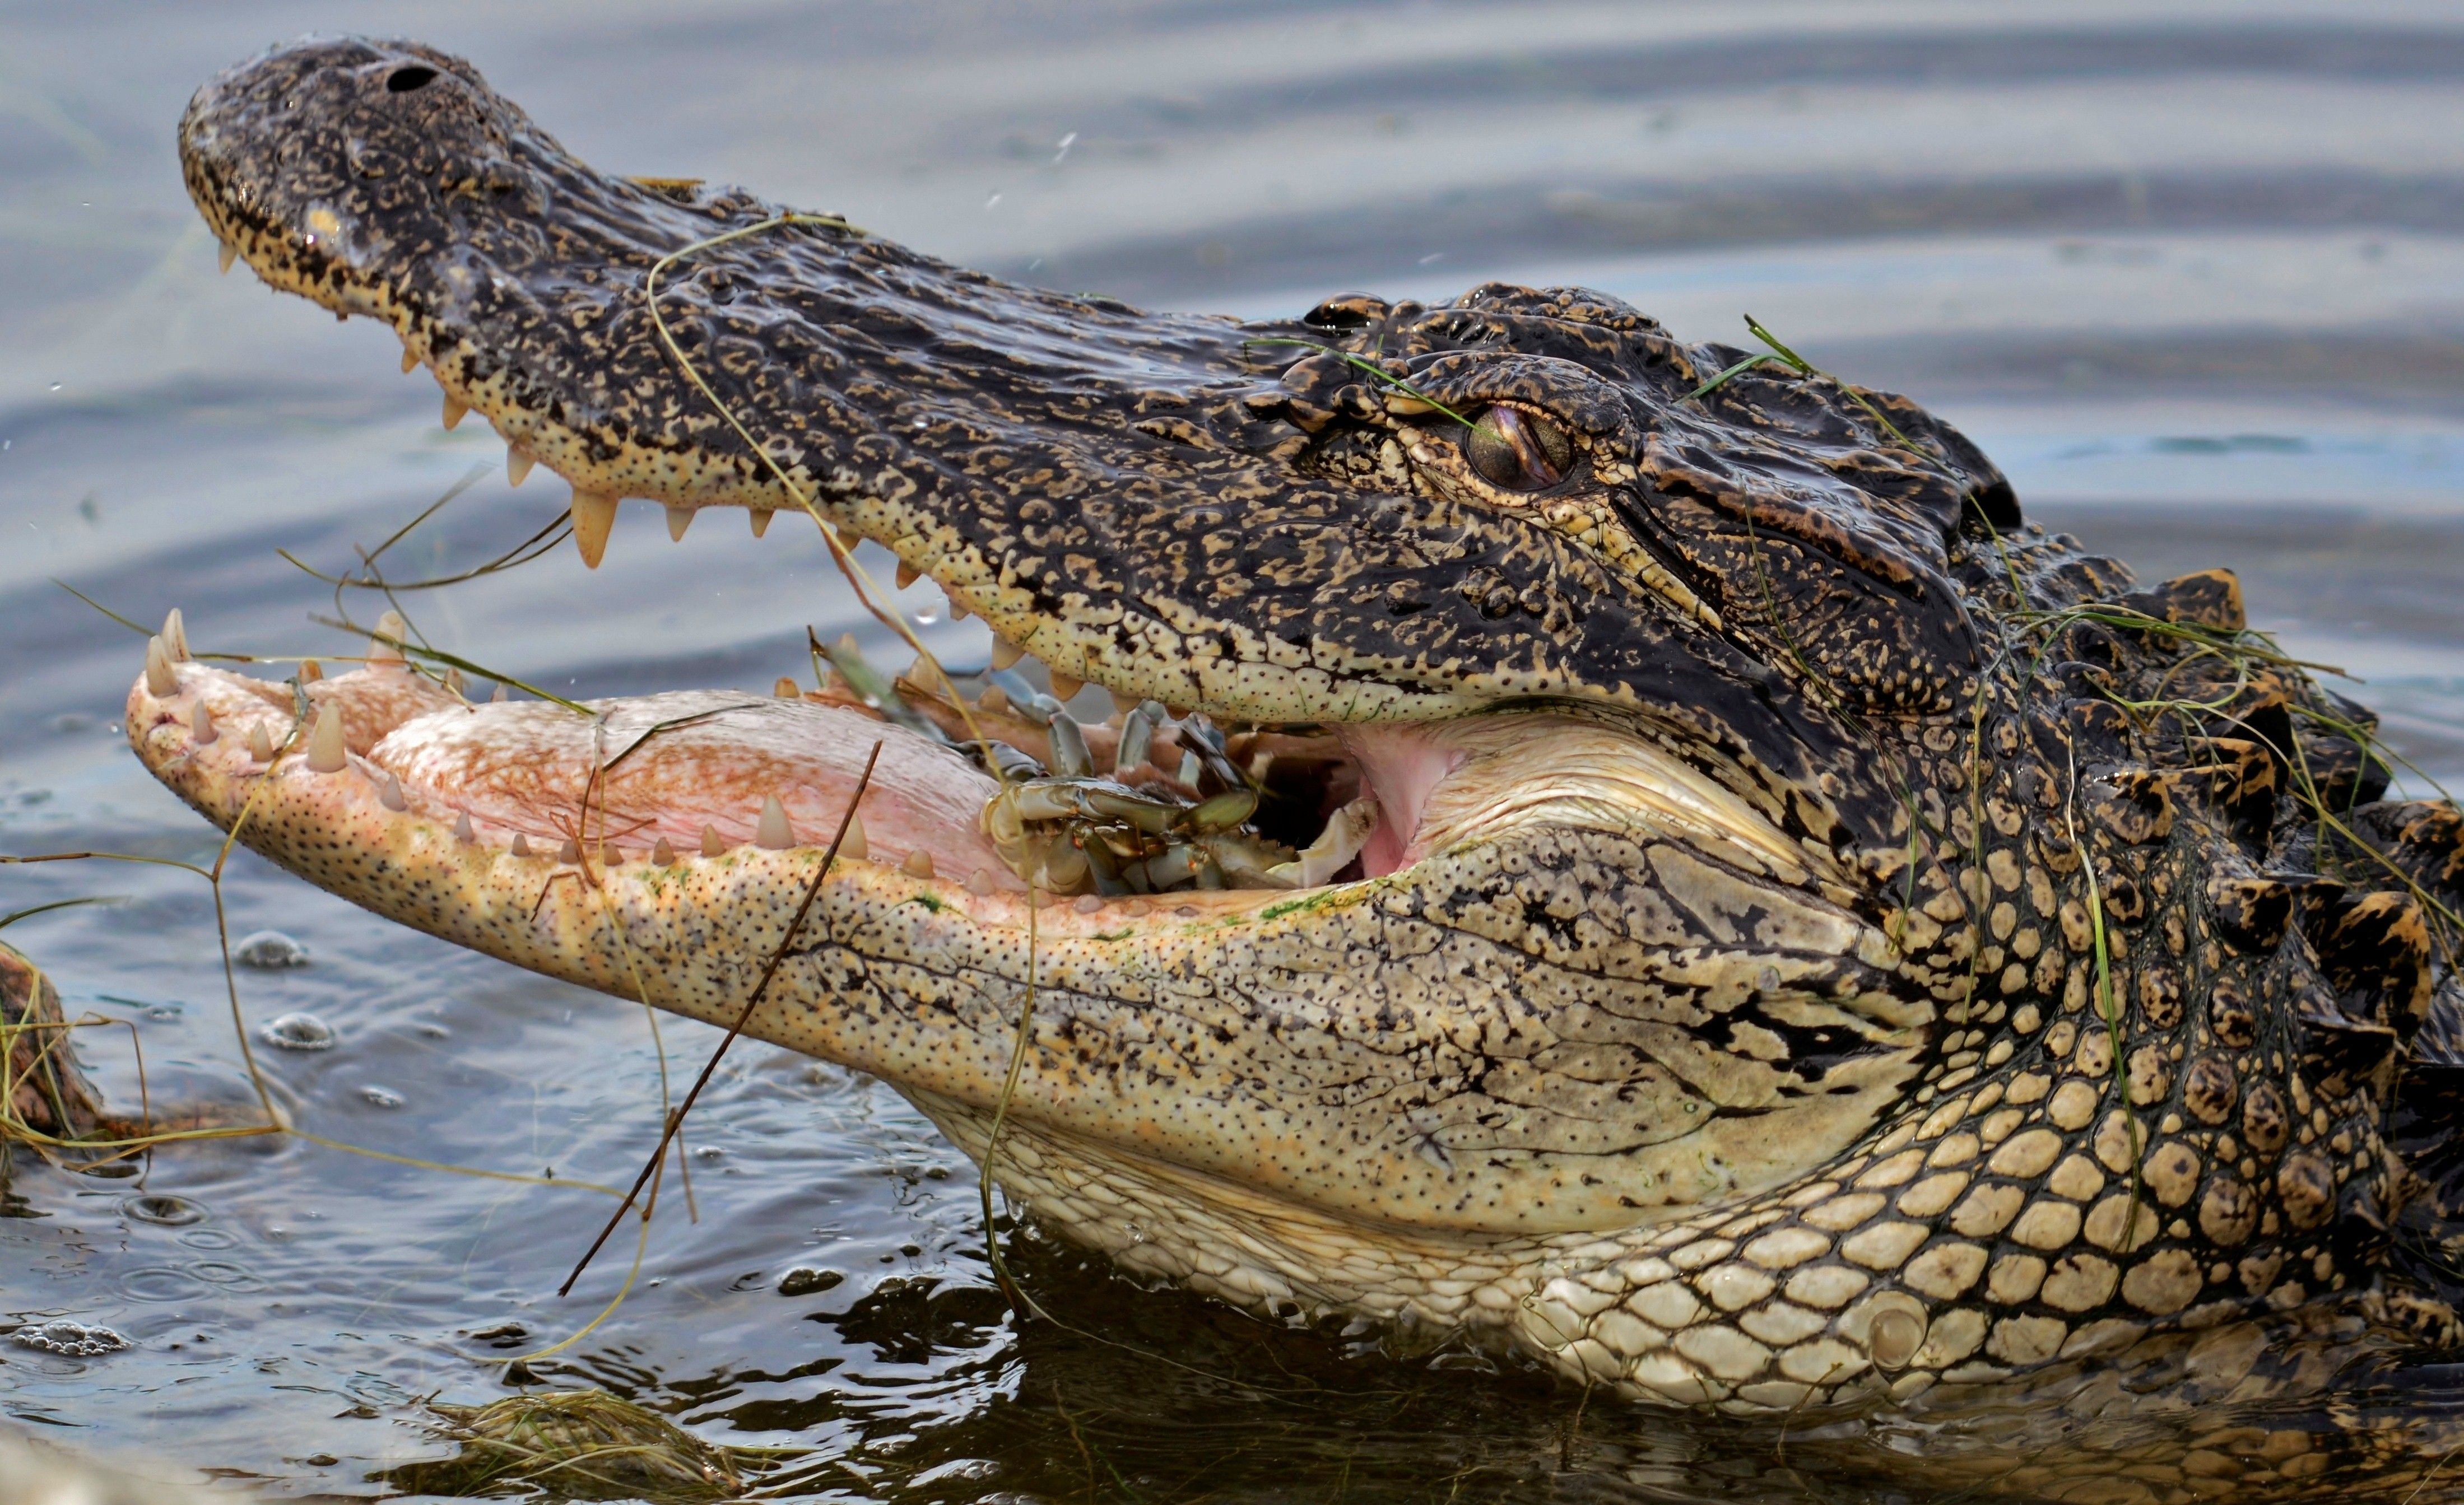 Wild Big Alligator Eating HD Animal Wallpaper